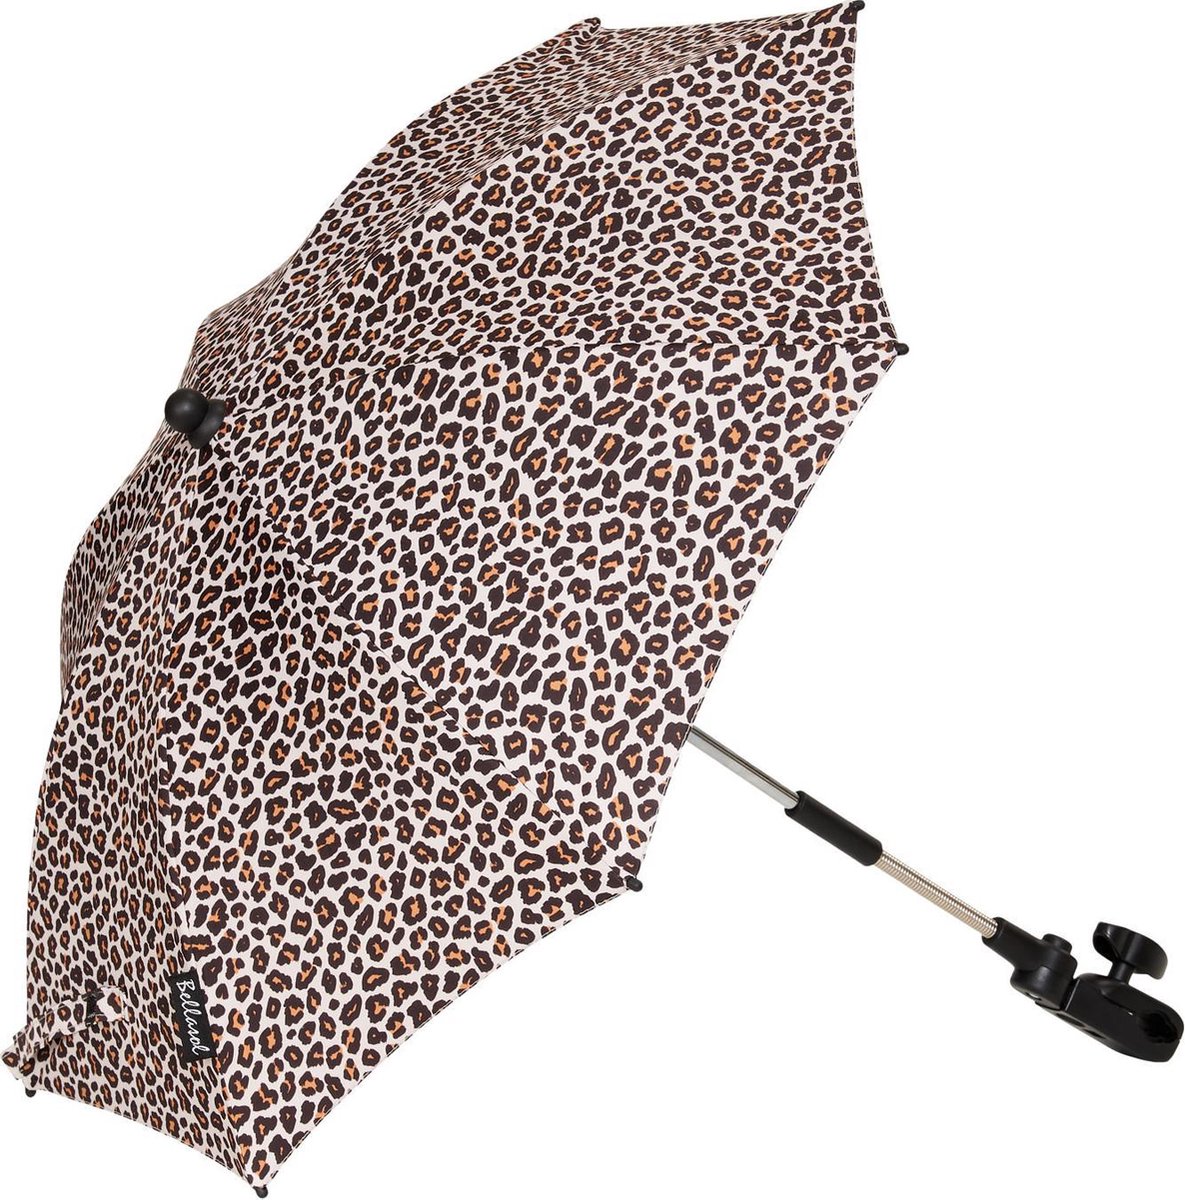 Bellasol Leopard Parasol